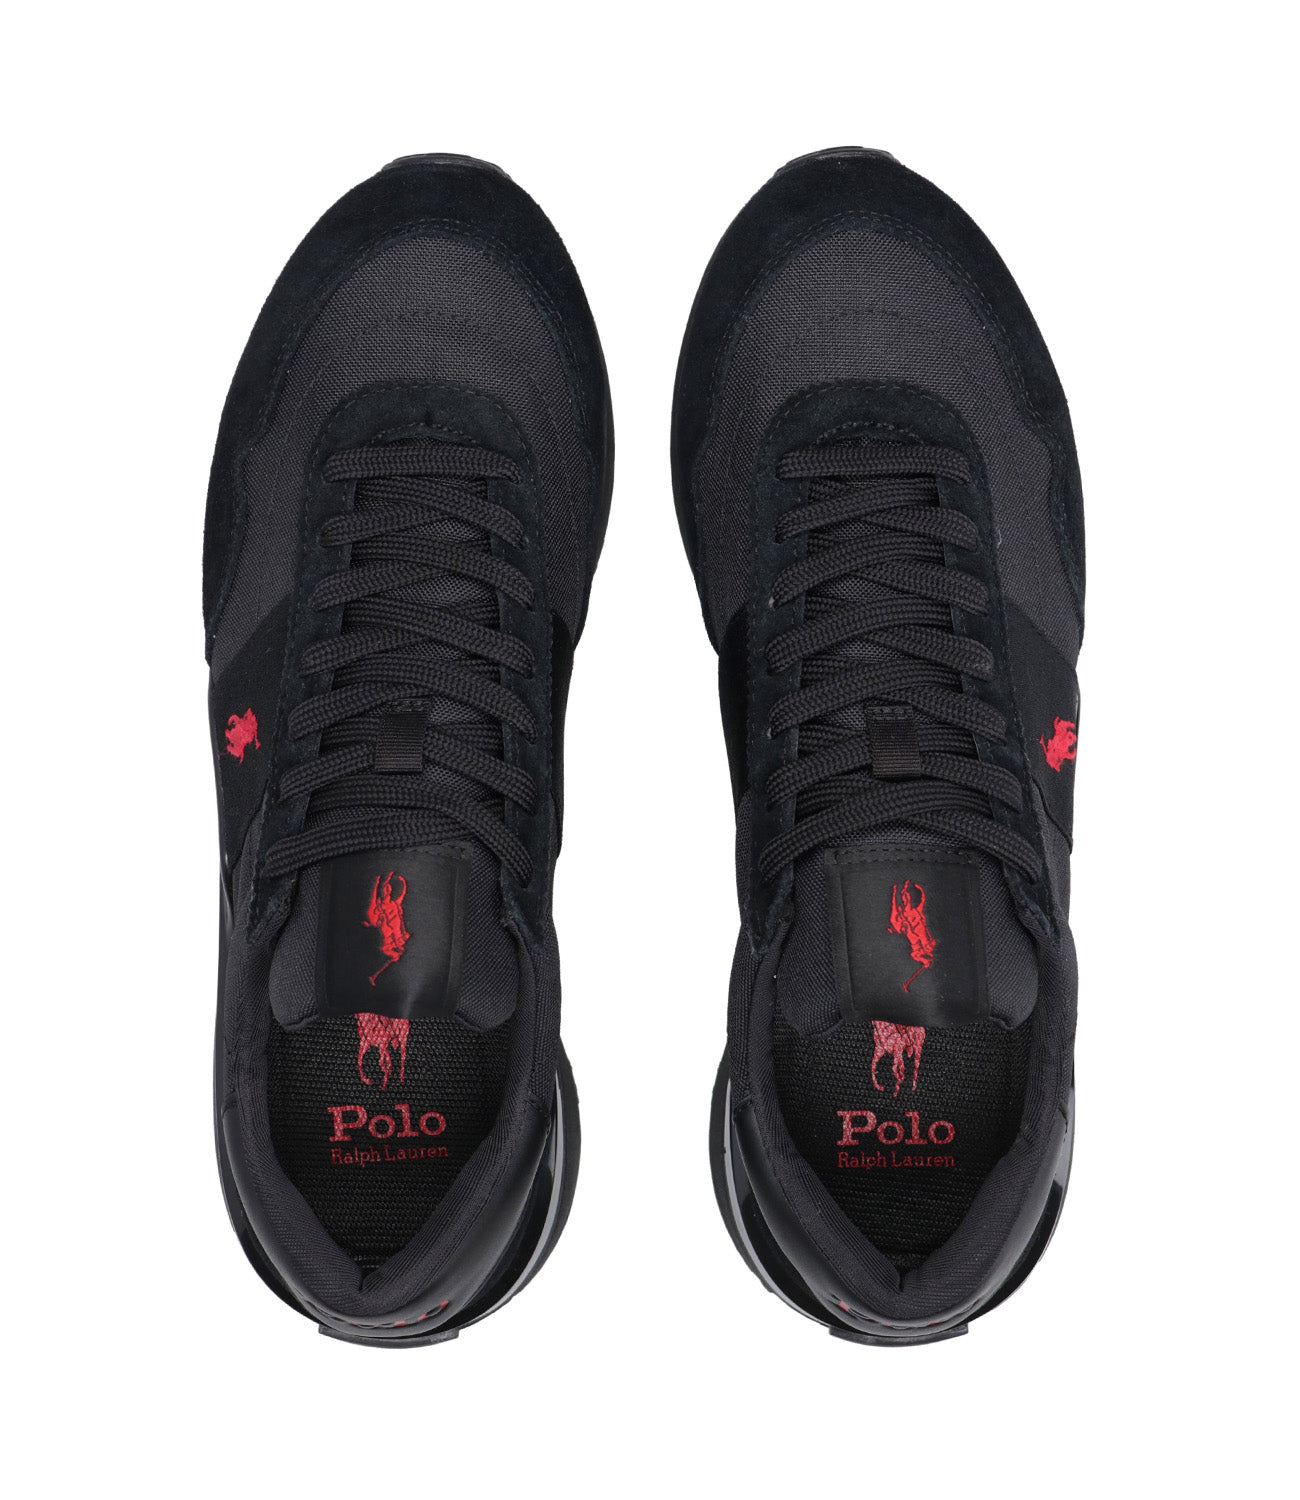 Polo Ralph Lauren | Sneakers Train 89 Nero e Rosso